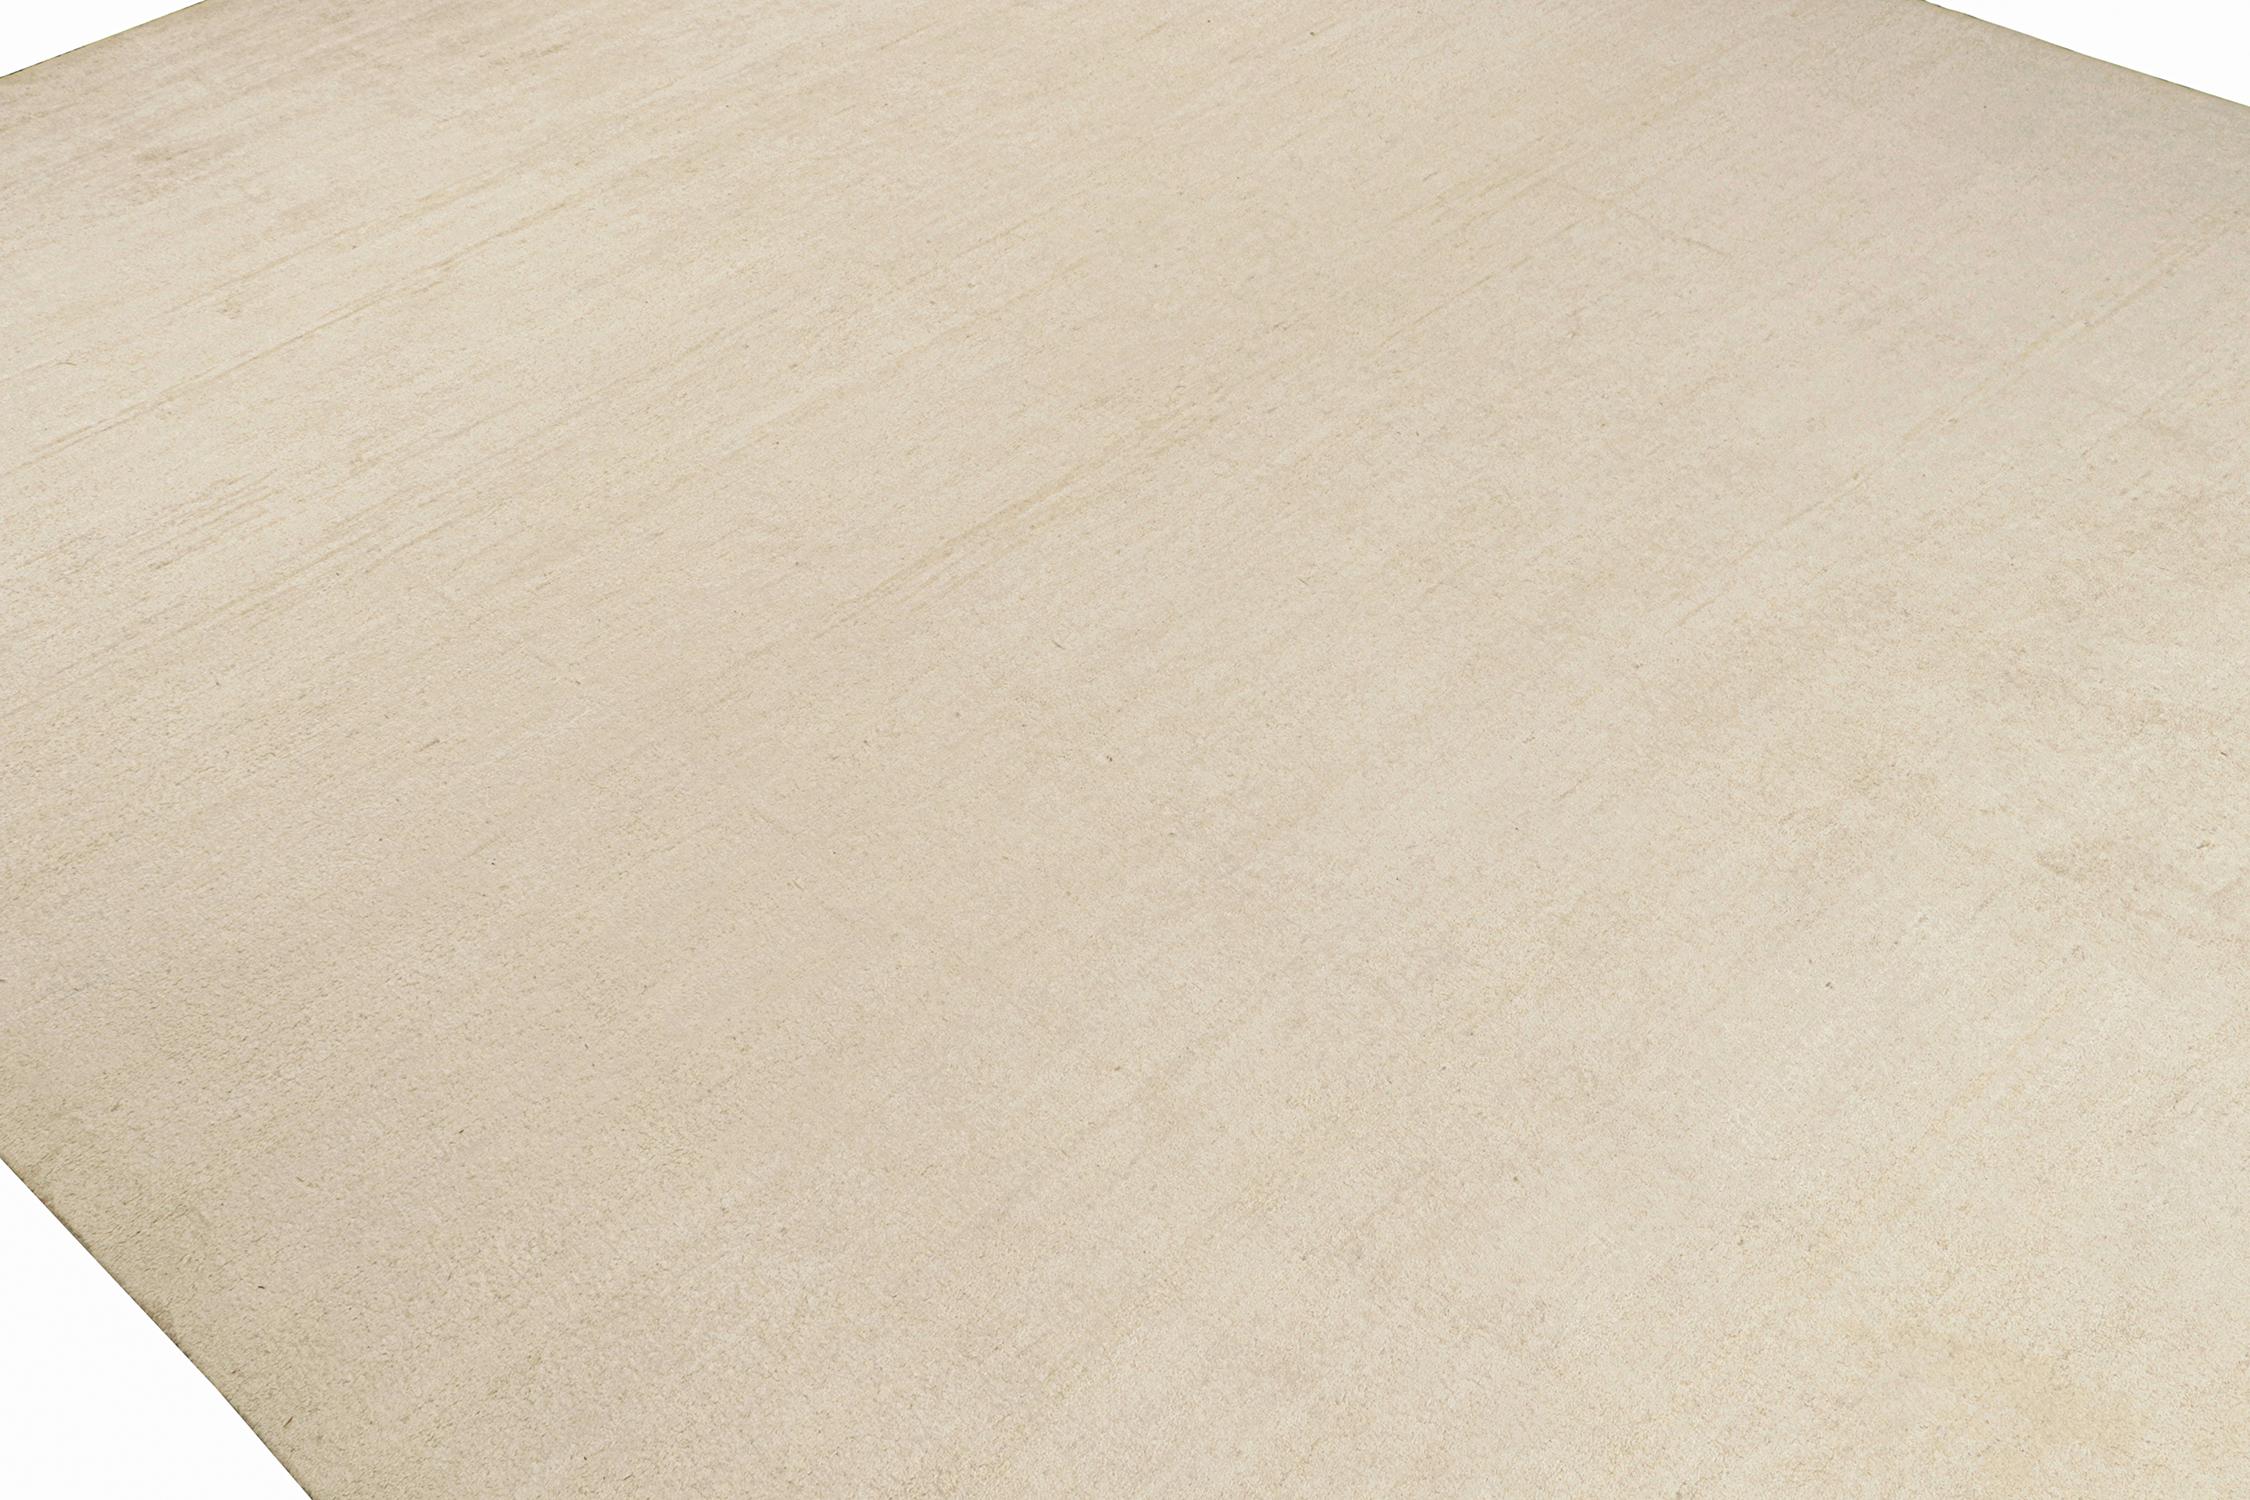 Indien Rug & Kilim's Solid Beige-Brown Rug in Tone-on-tone Contemporary Style (tapis beige et brun uni dans un style contemporain) en vente